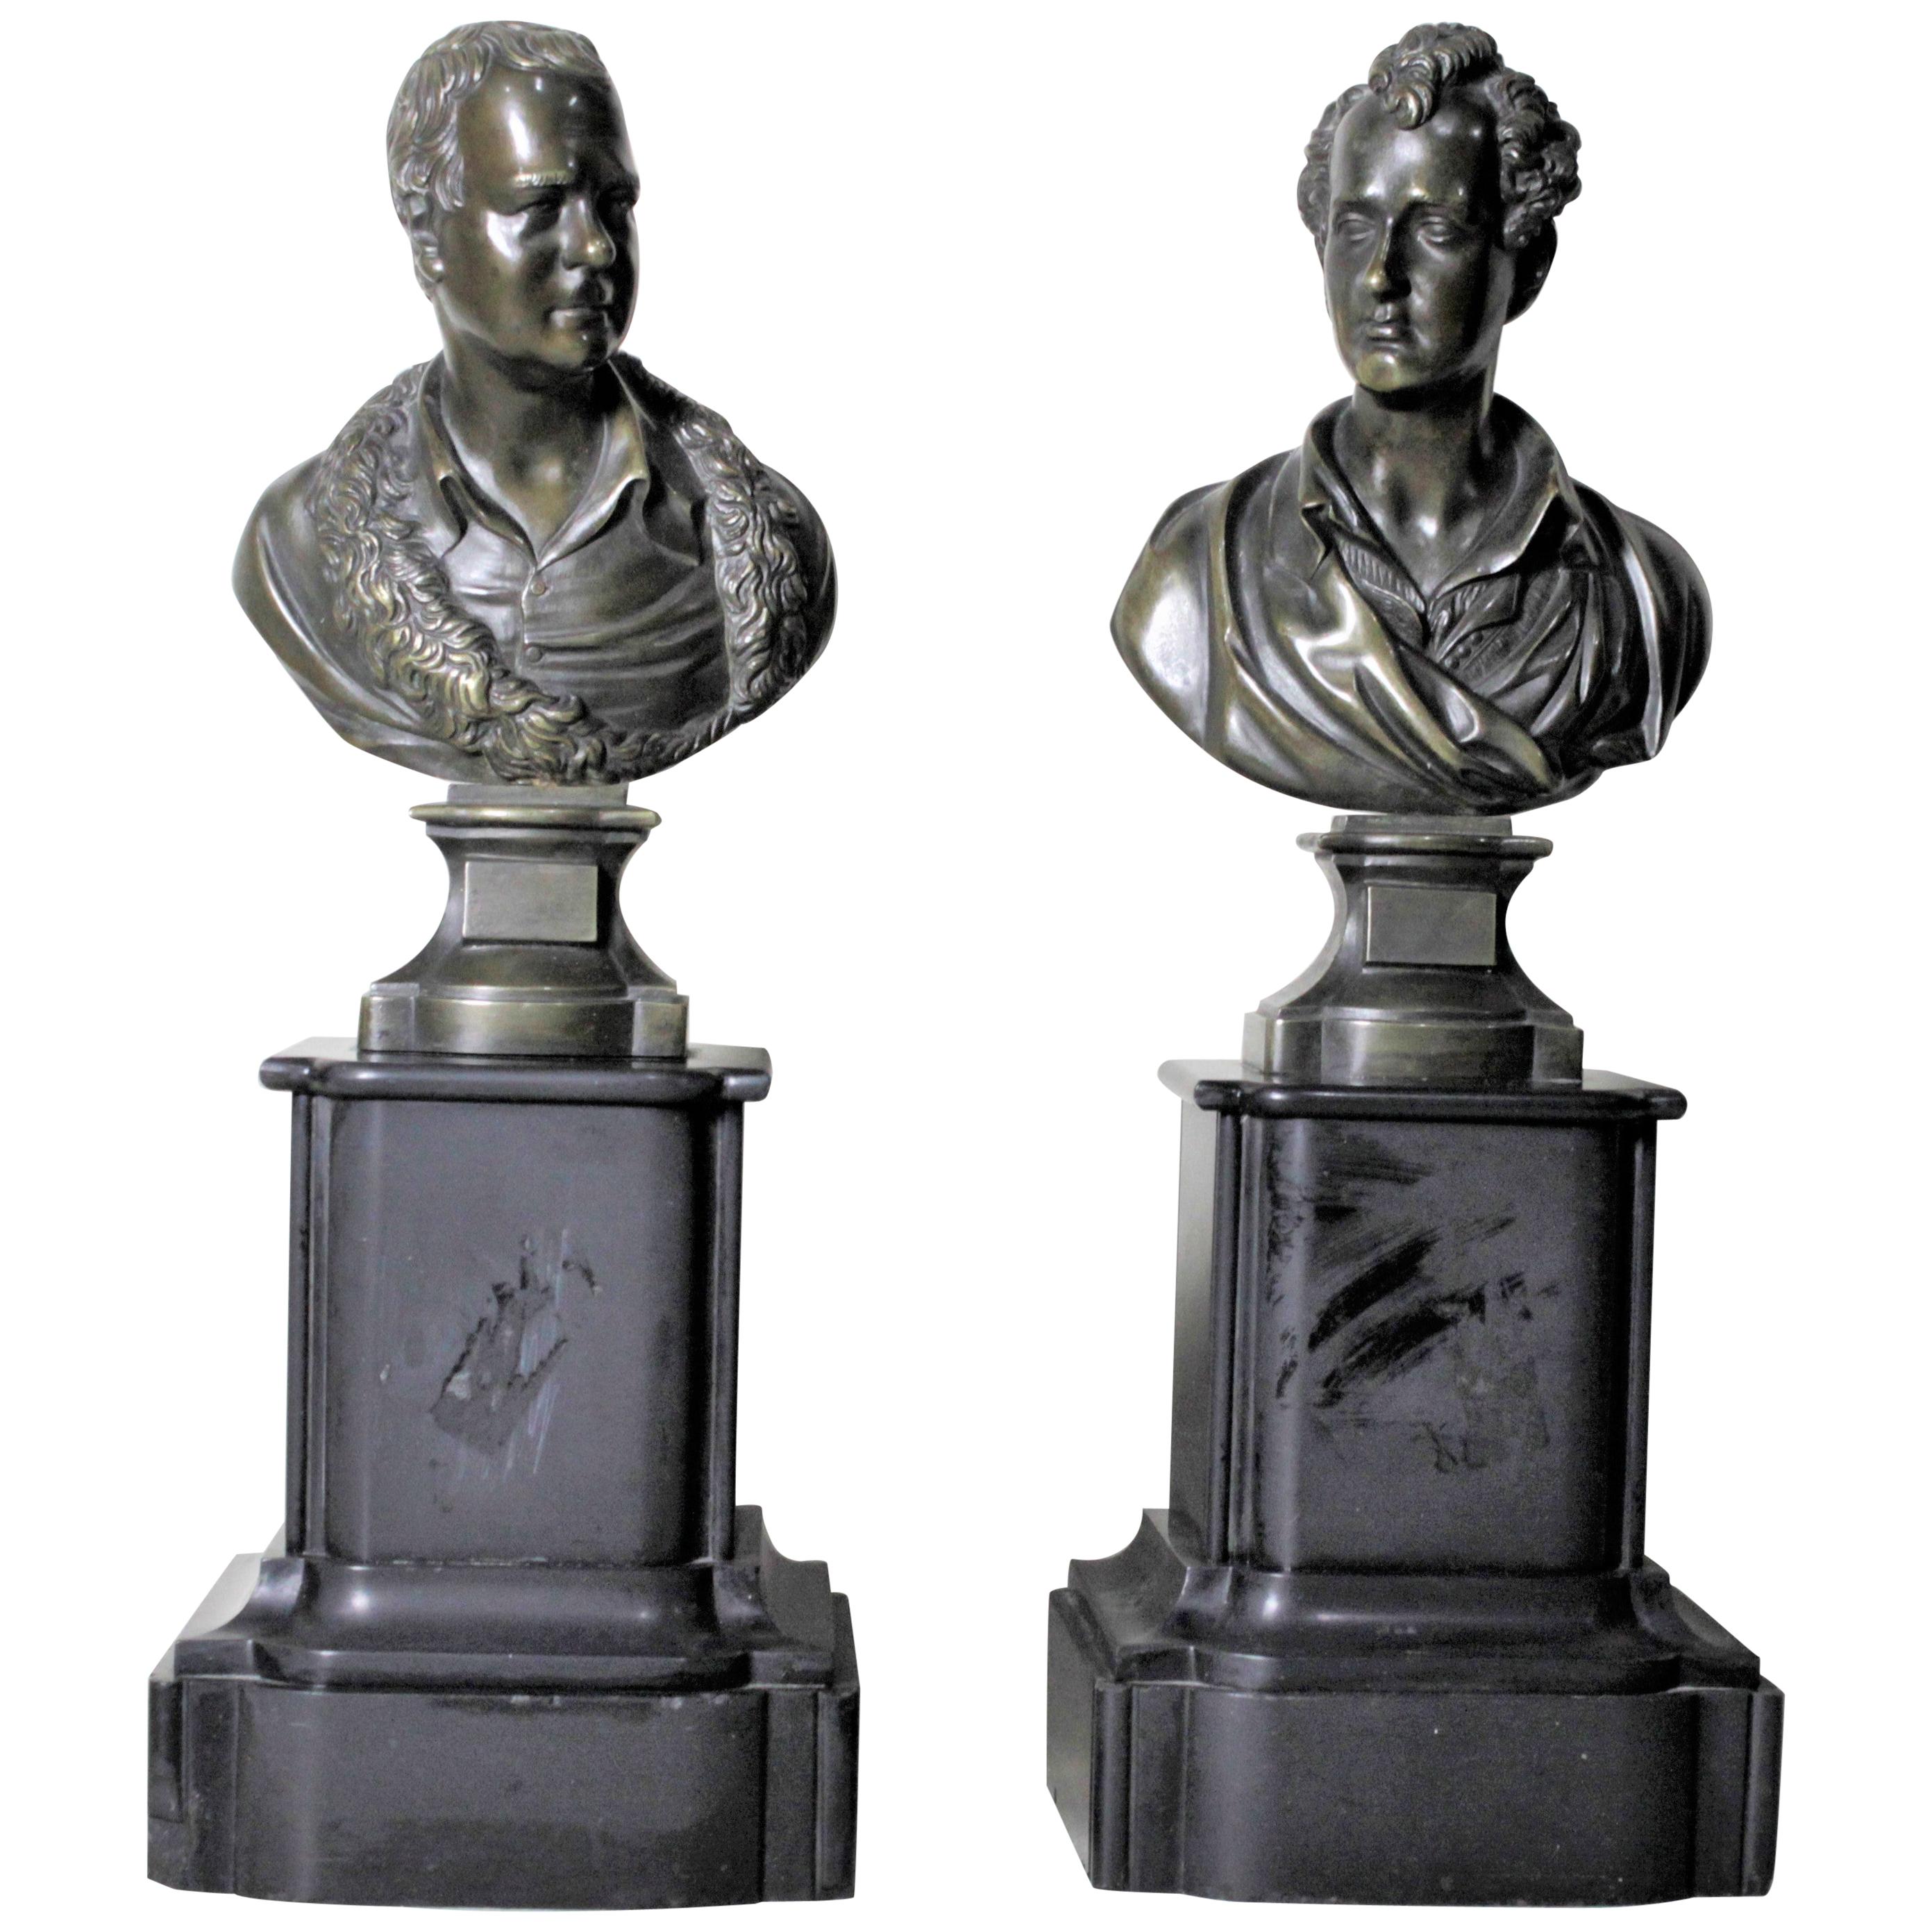 Pair of Antique Bronze Statues of Poets Robert Burns & Walter Scott